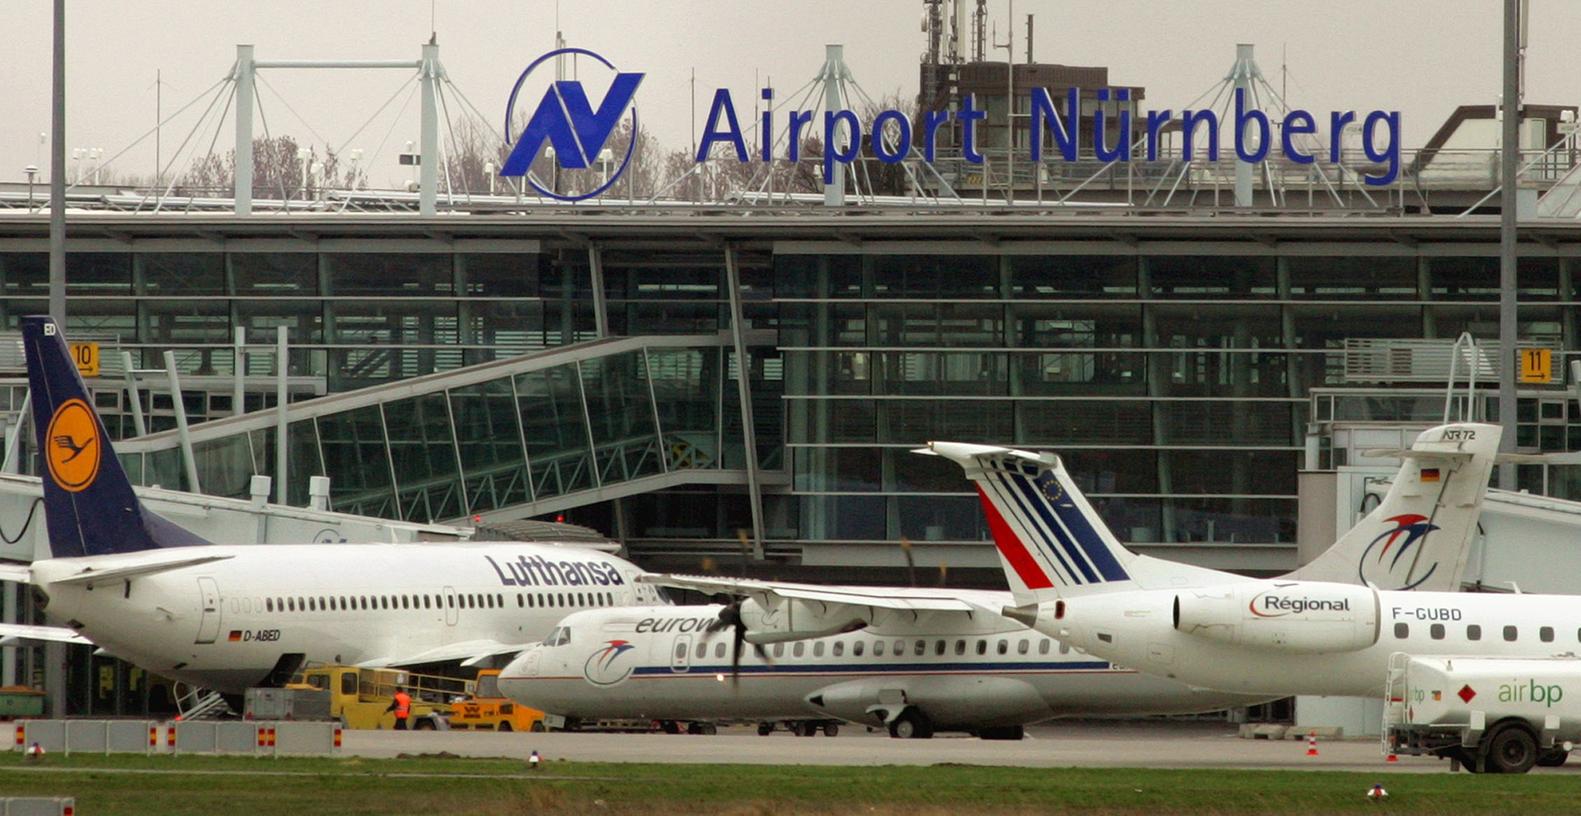 Der Nürnberger Flughafen vermeldet nach den diesjährigen Sommerferien einen Passagierzuwachs von 11 Prozent im Vergleich zum Vorjahr.